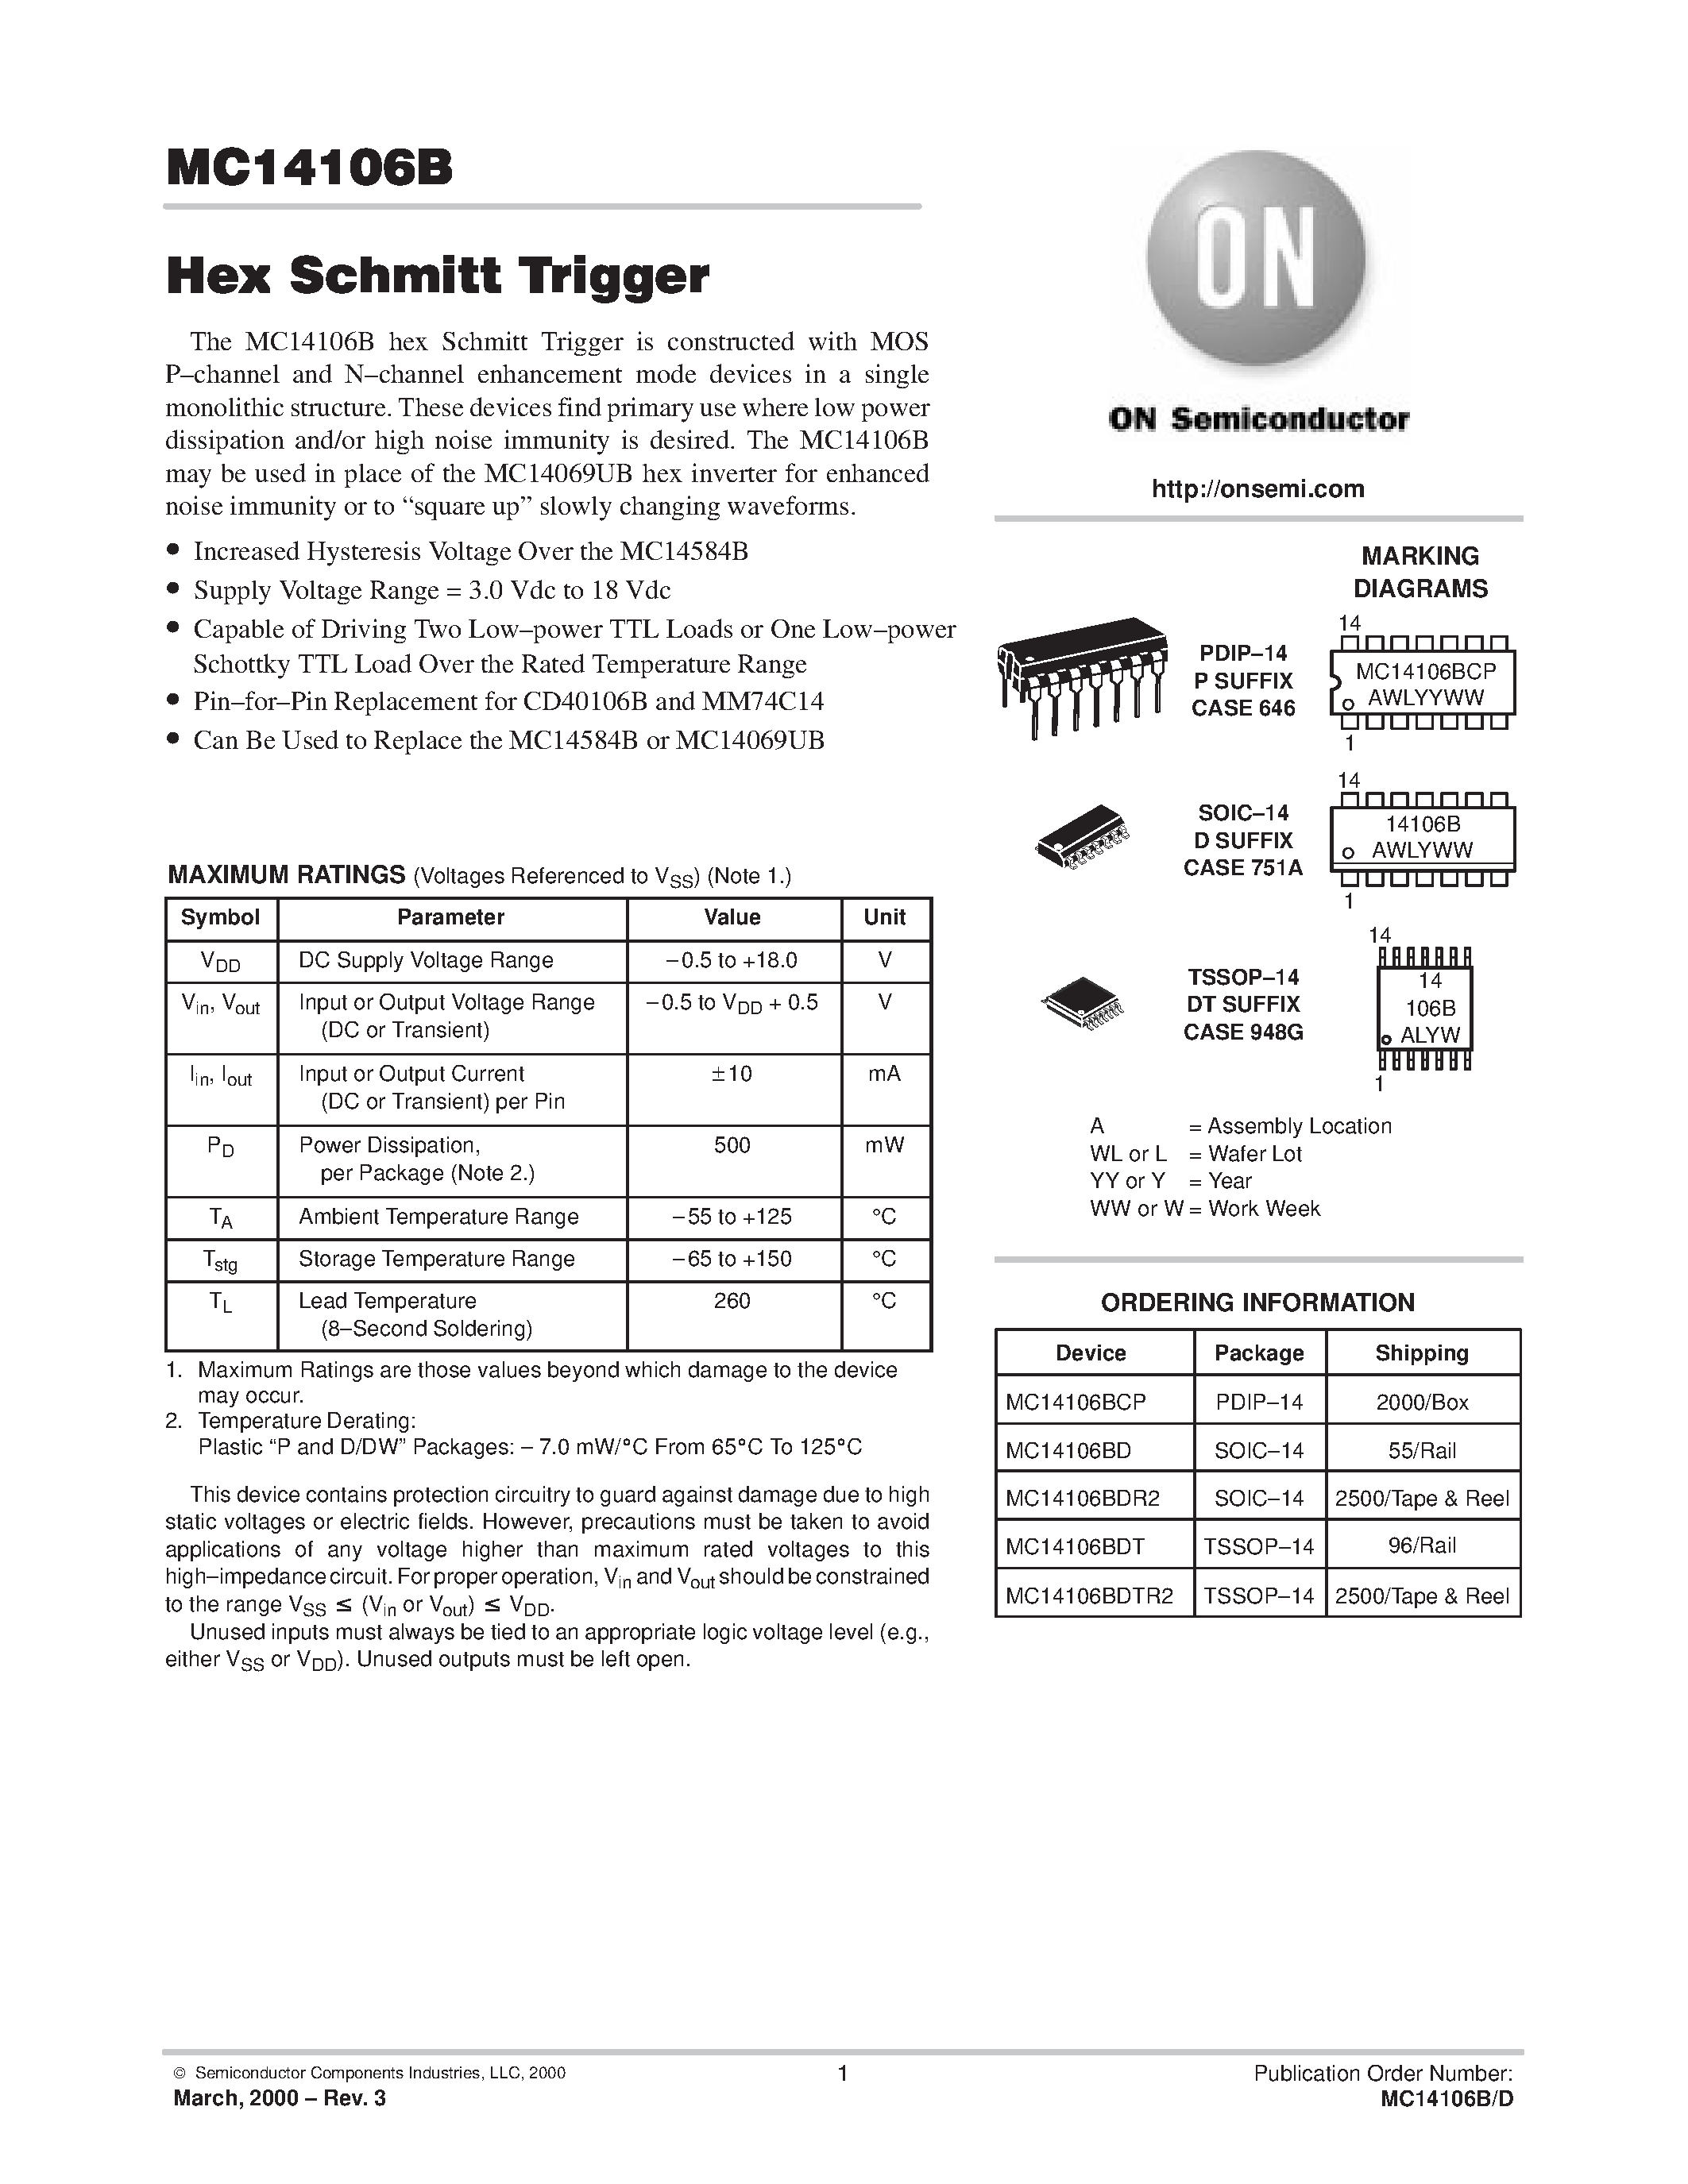 Даташит MC14106BCP - Hex Schmitt Trigger страница 1